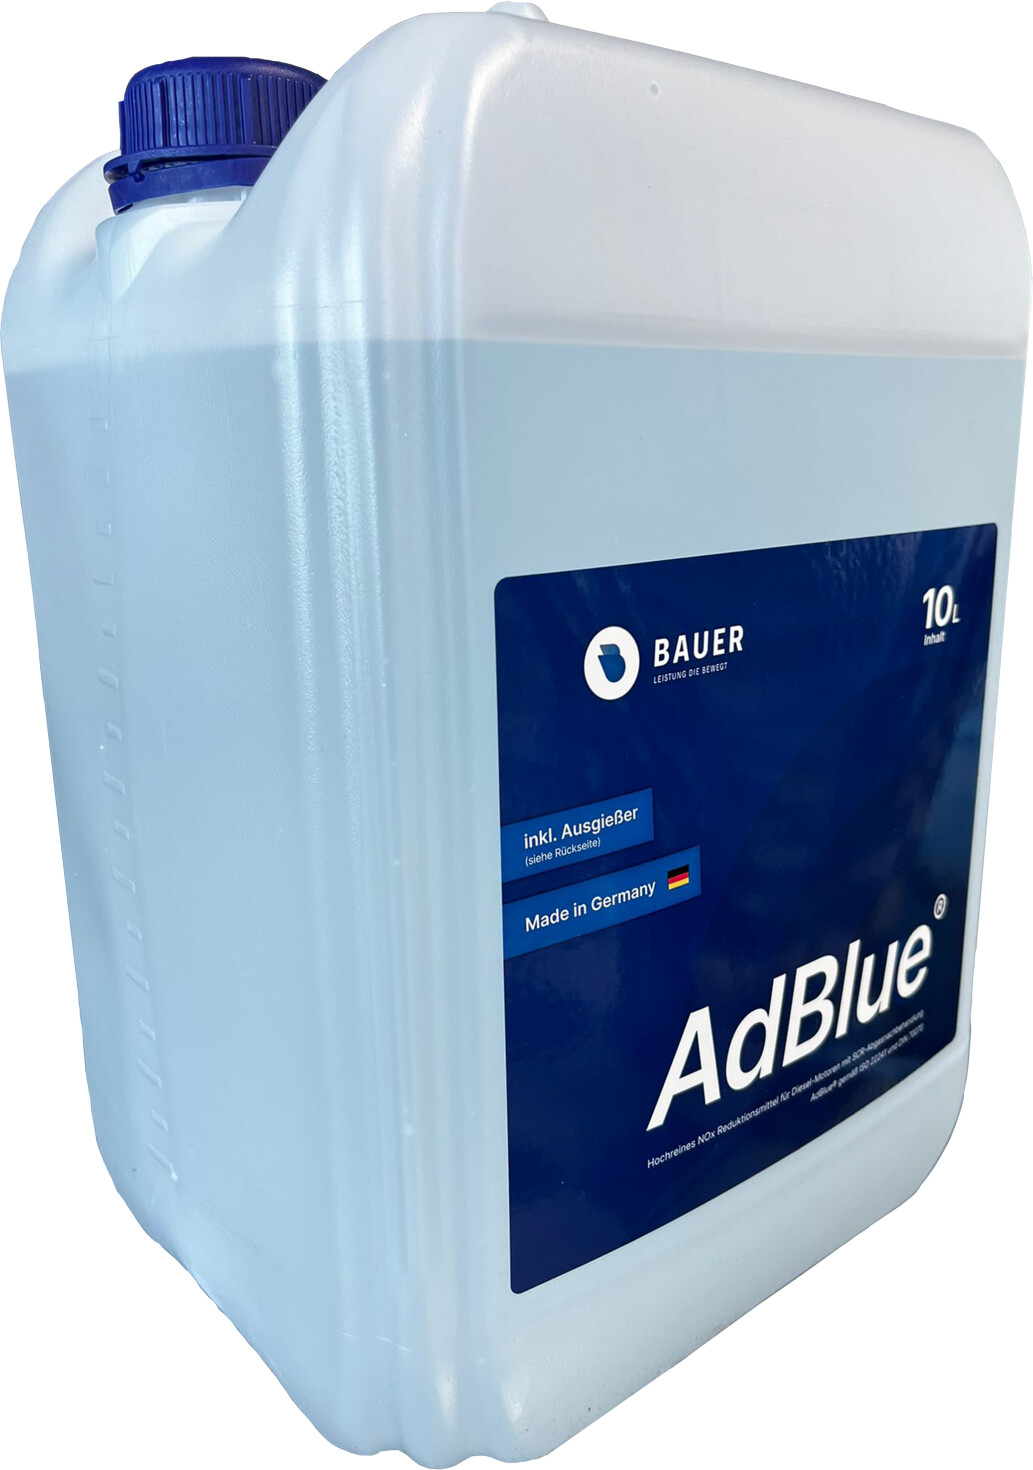 Hoyer AdBlue, hochreine Harnstofflösung, 5 Liter : : Auto &  Motorrad